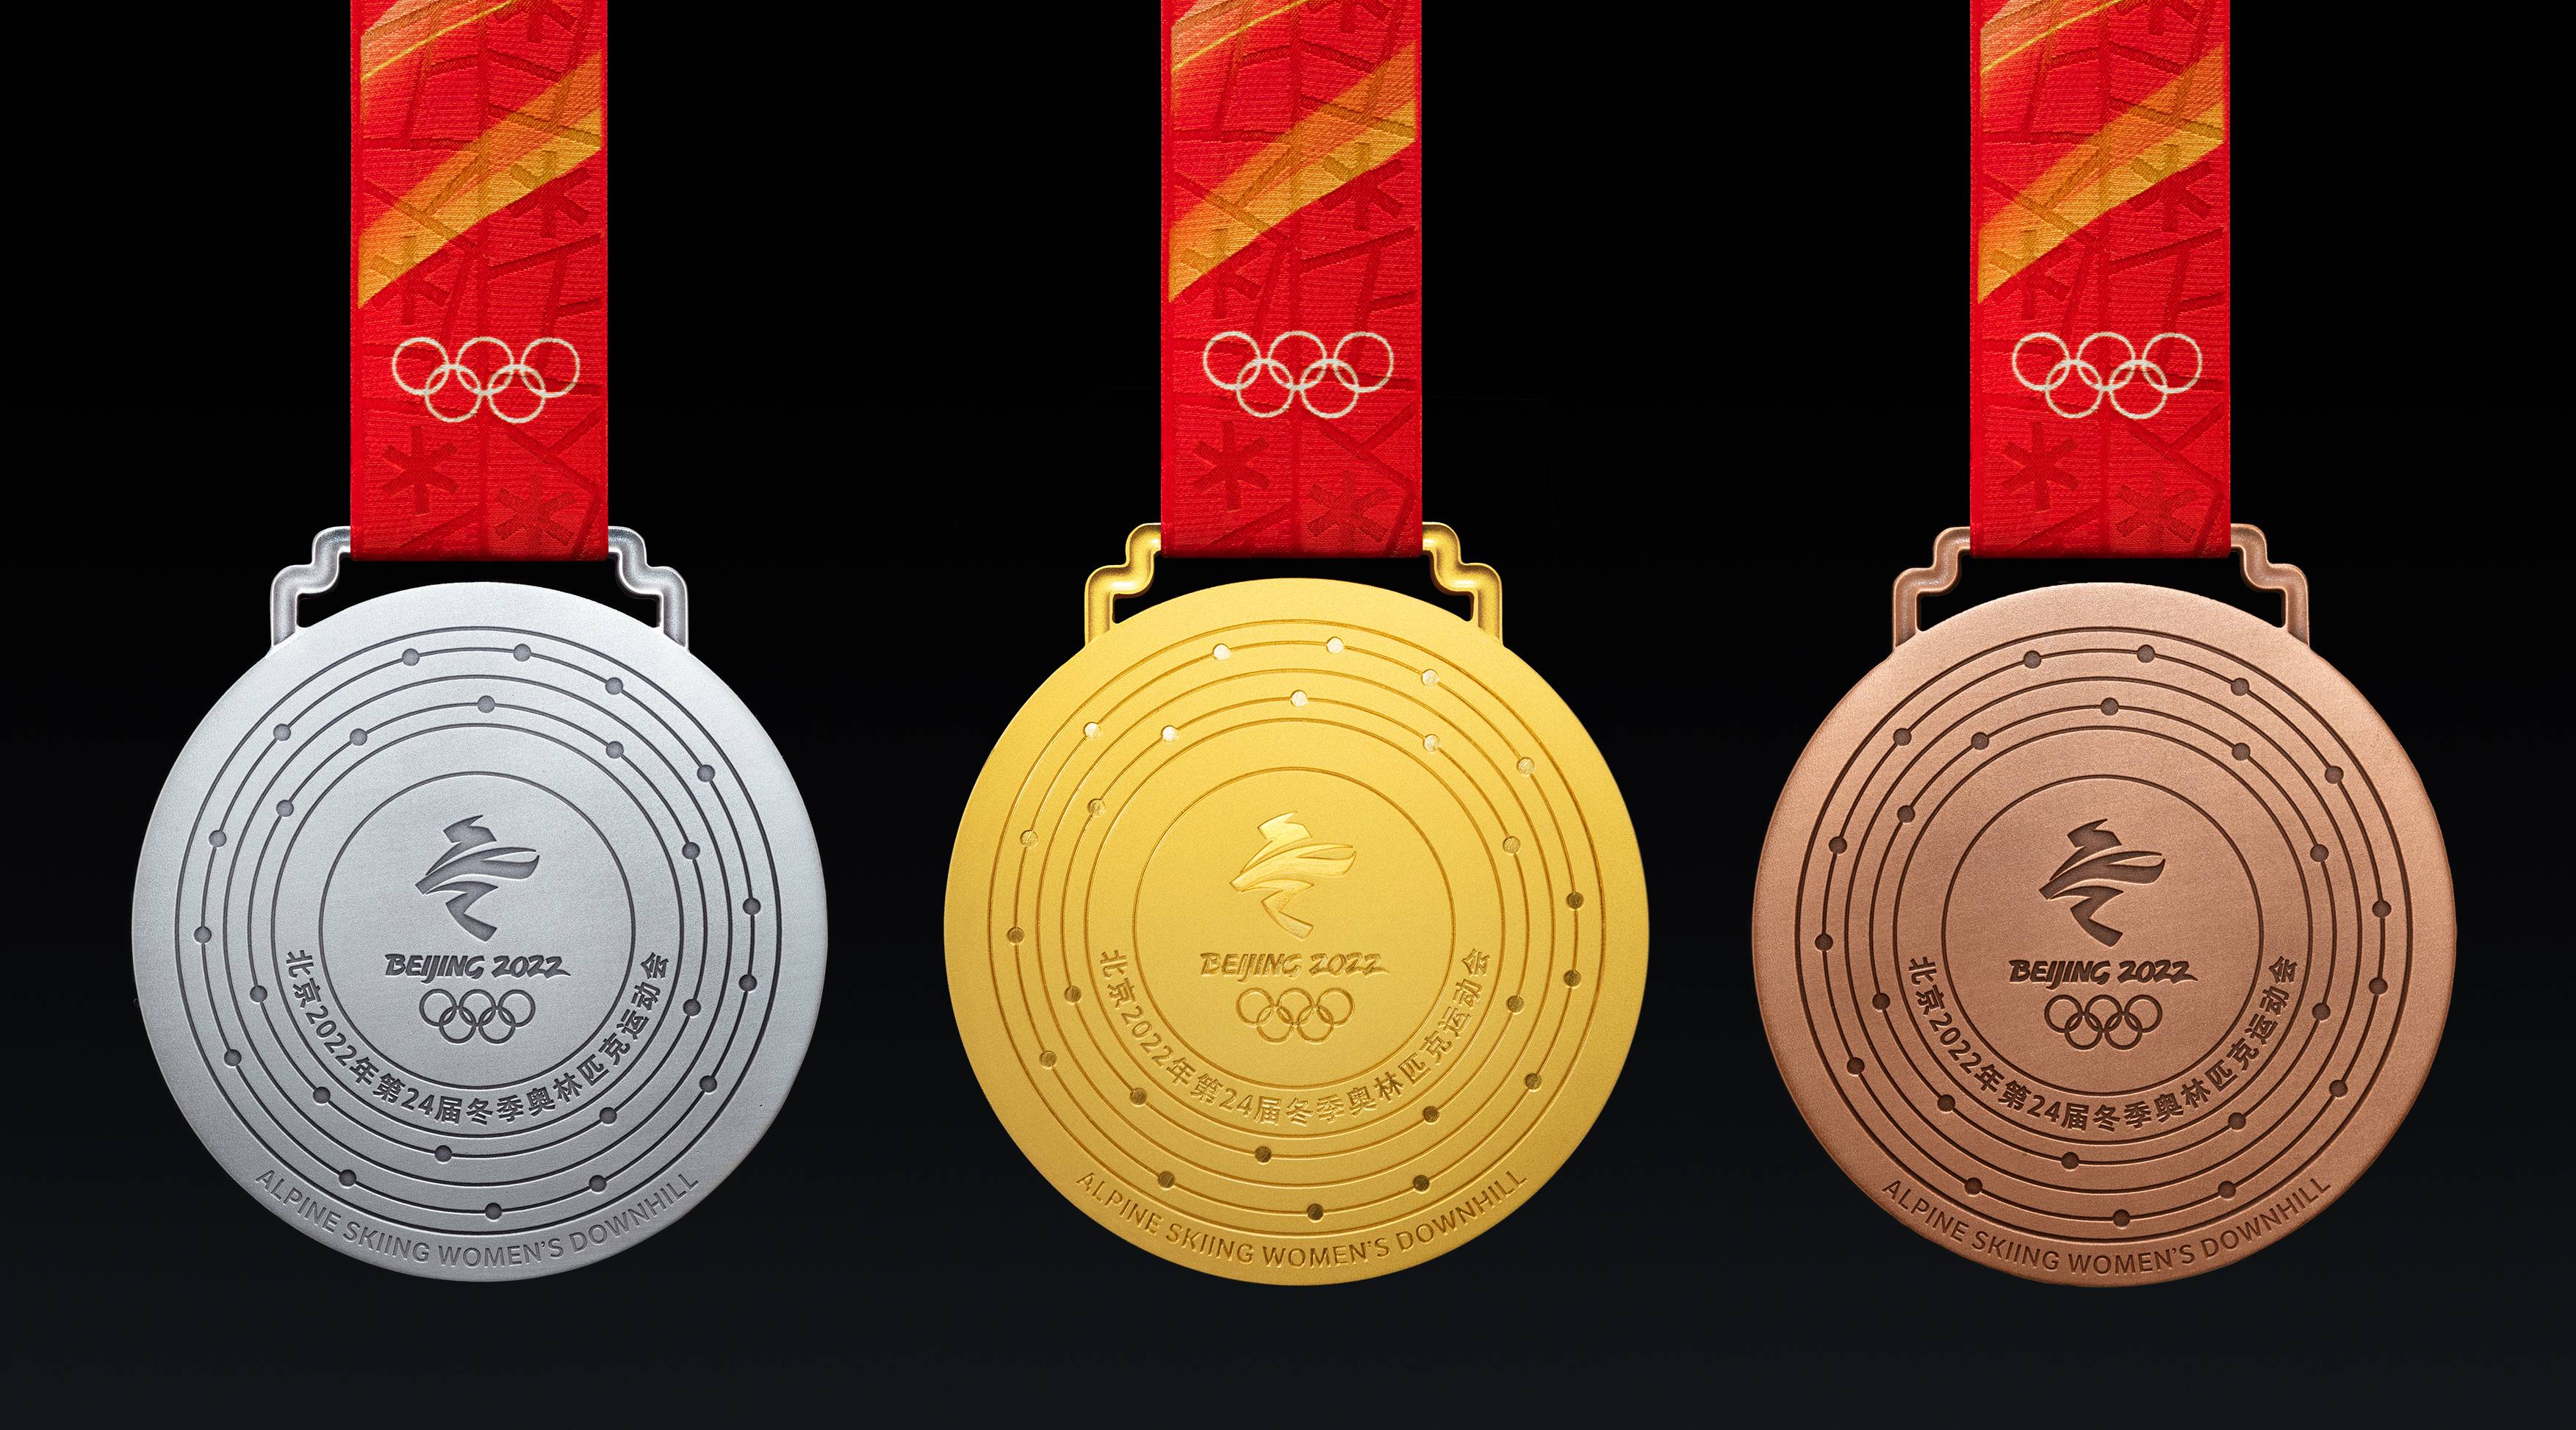 В Китае представили дизайн медалей Олимпийских игр 2022 года